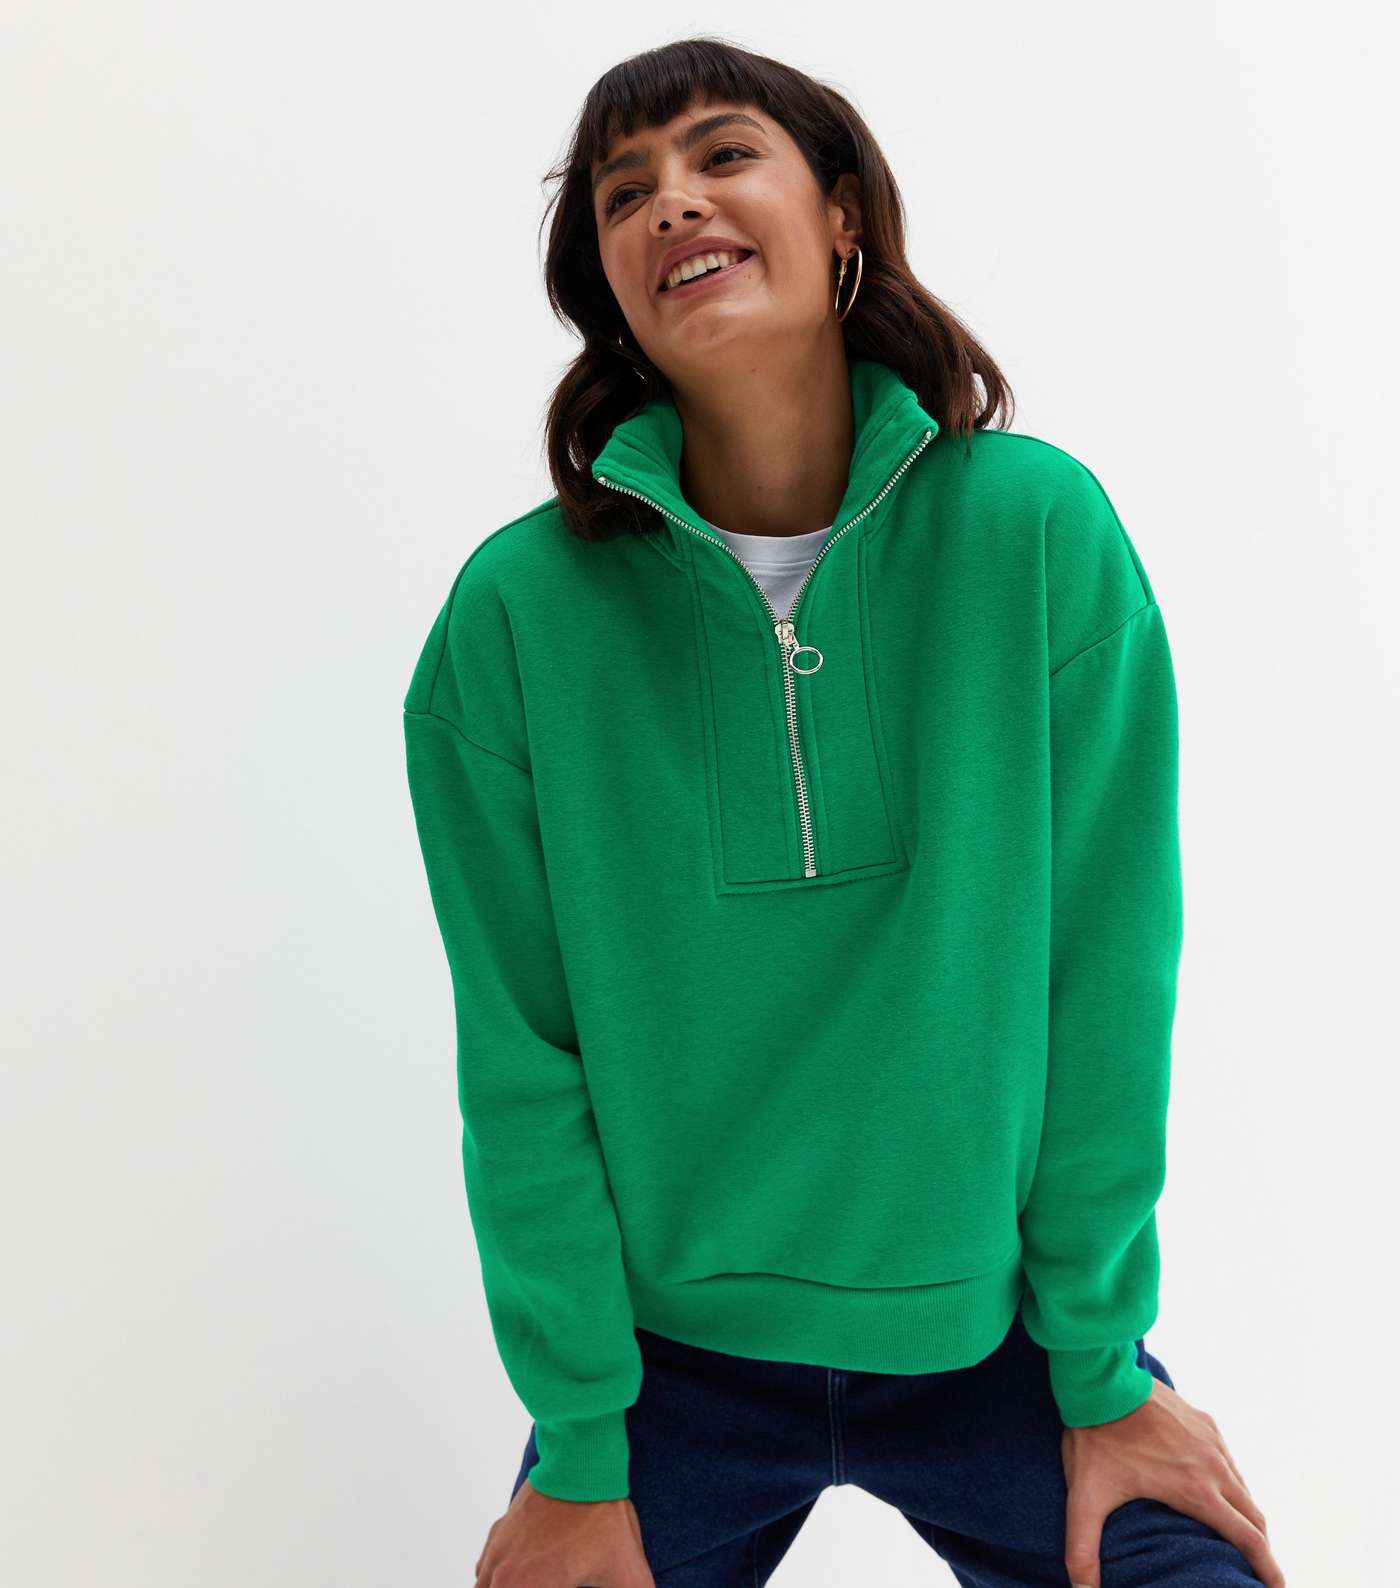 Green 1/2 Zip High Neck Sweatshirt